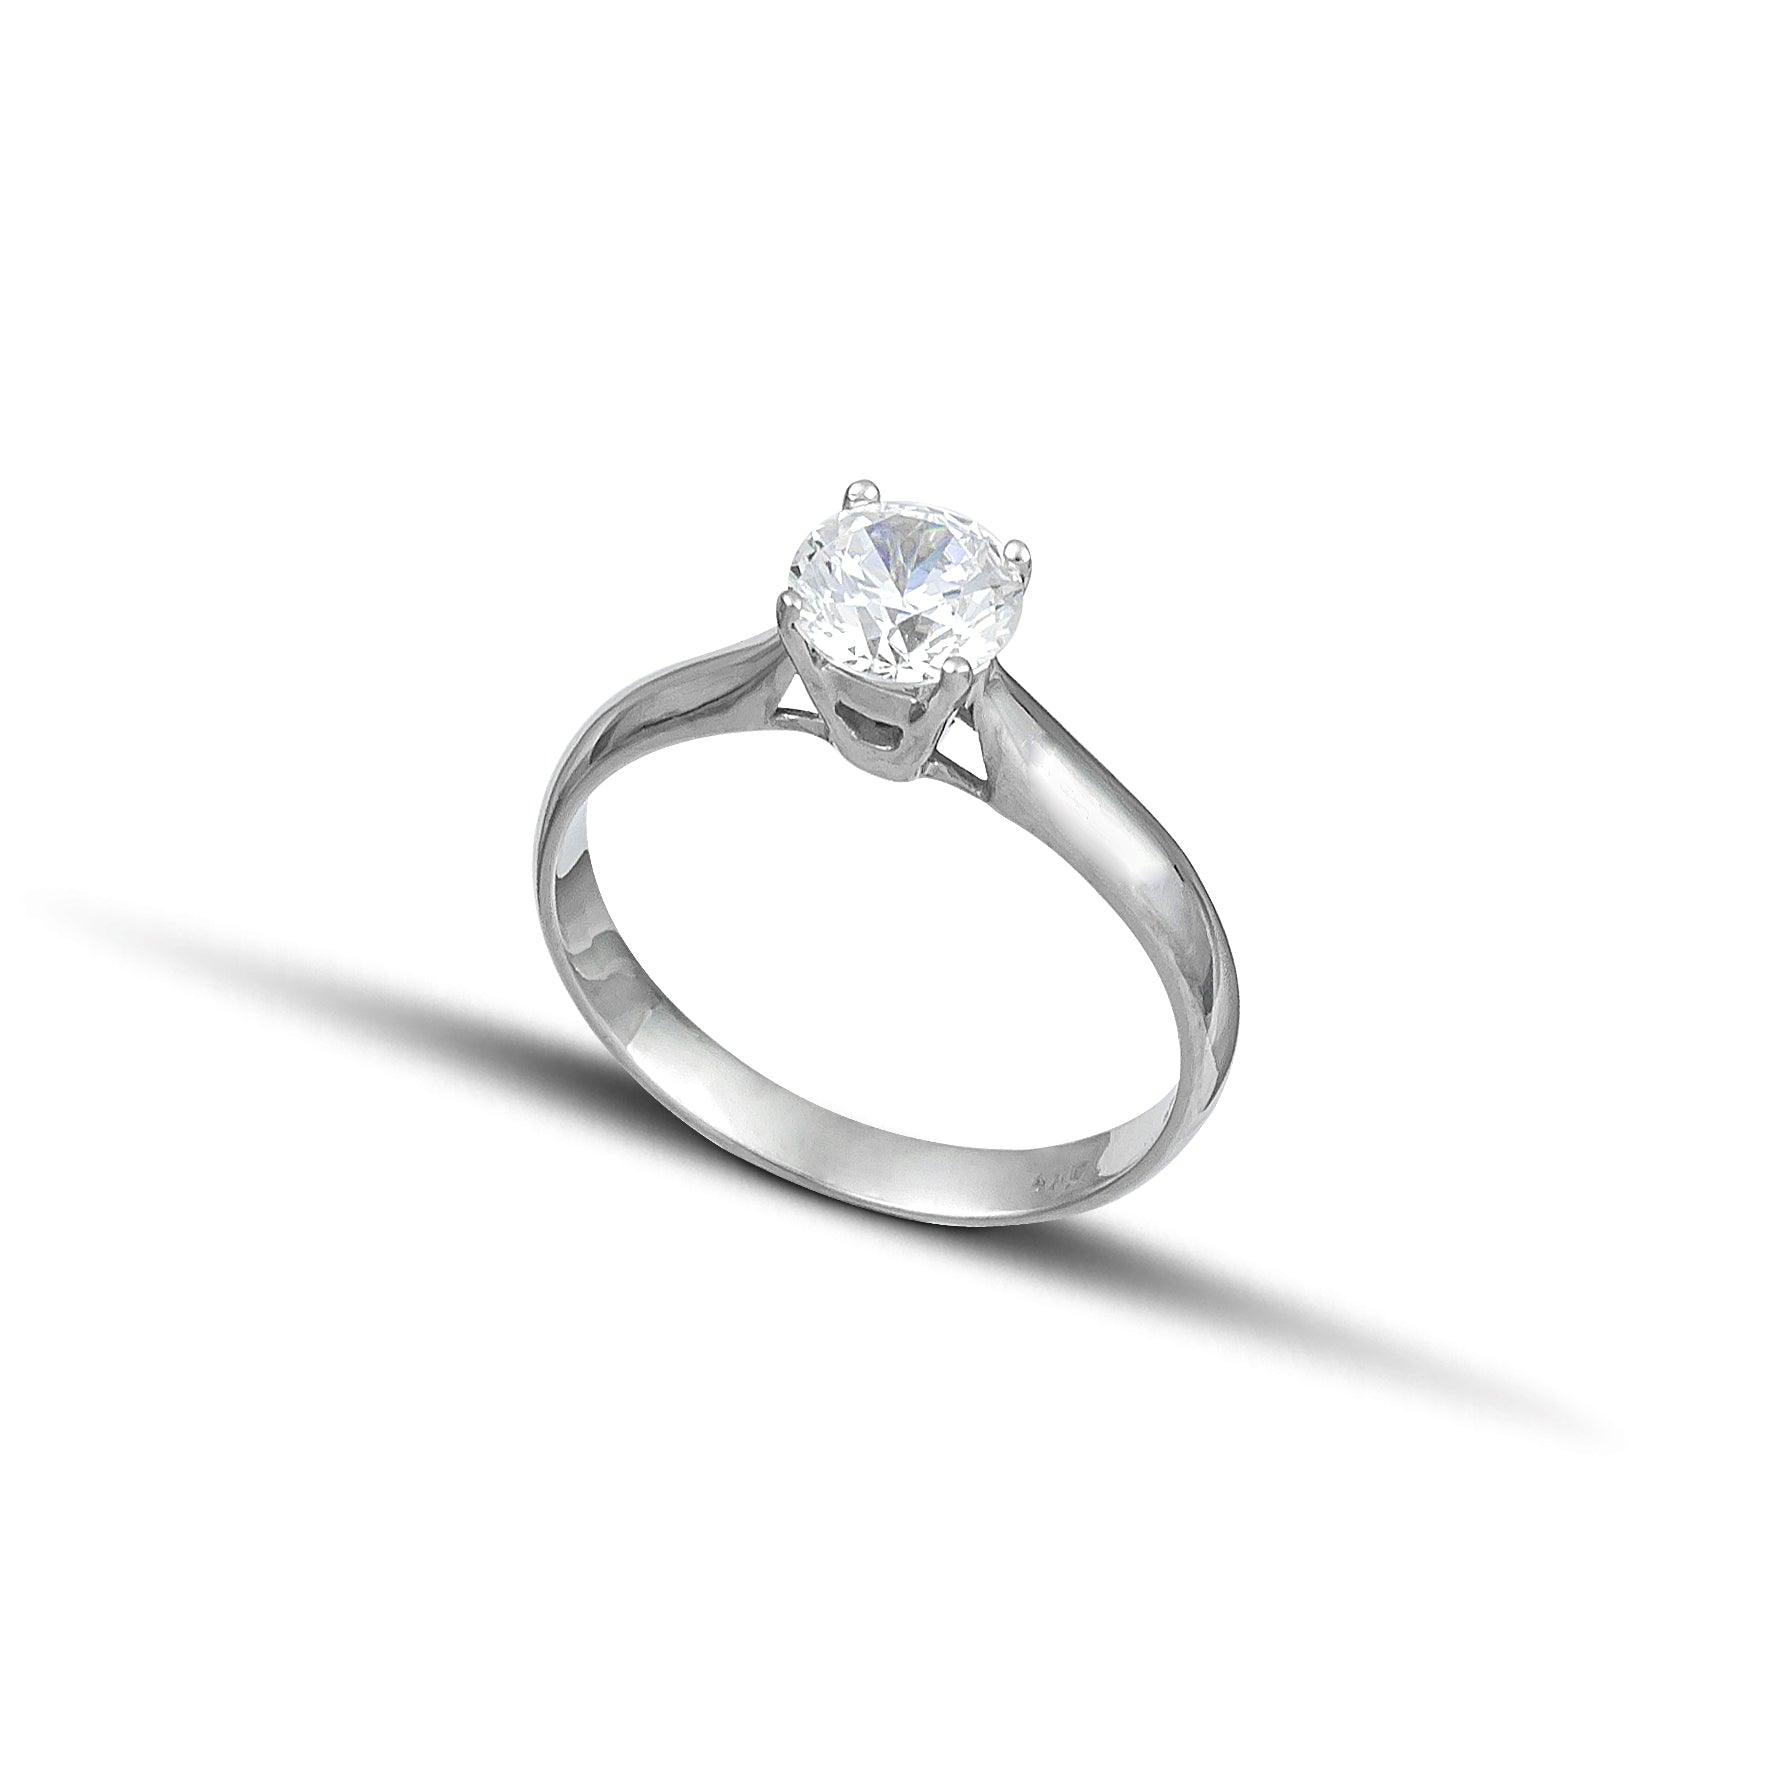 Λευκόχρυσο μονόπετρο δαχτυλίδι με διαμάντι.